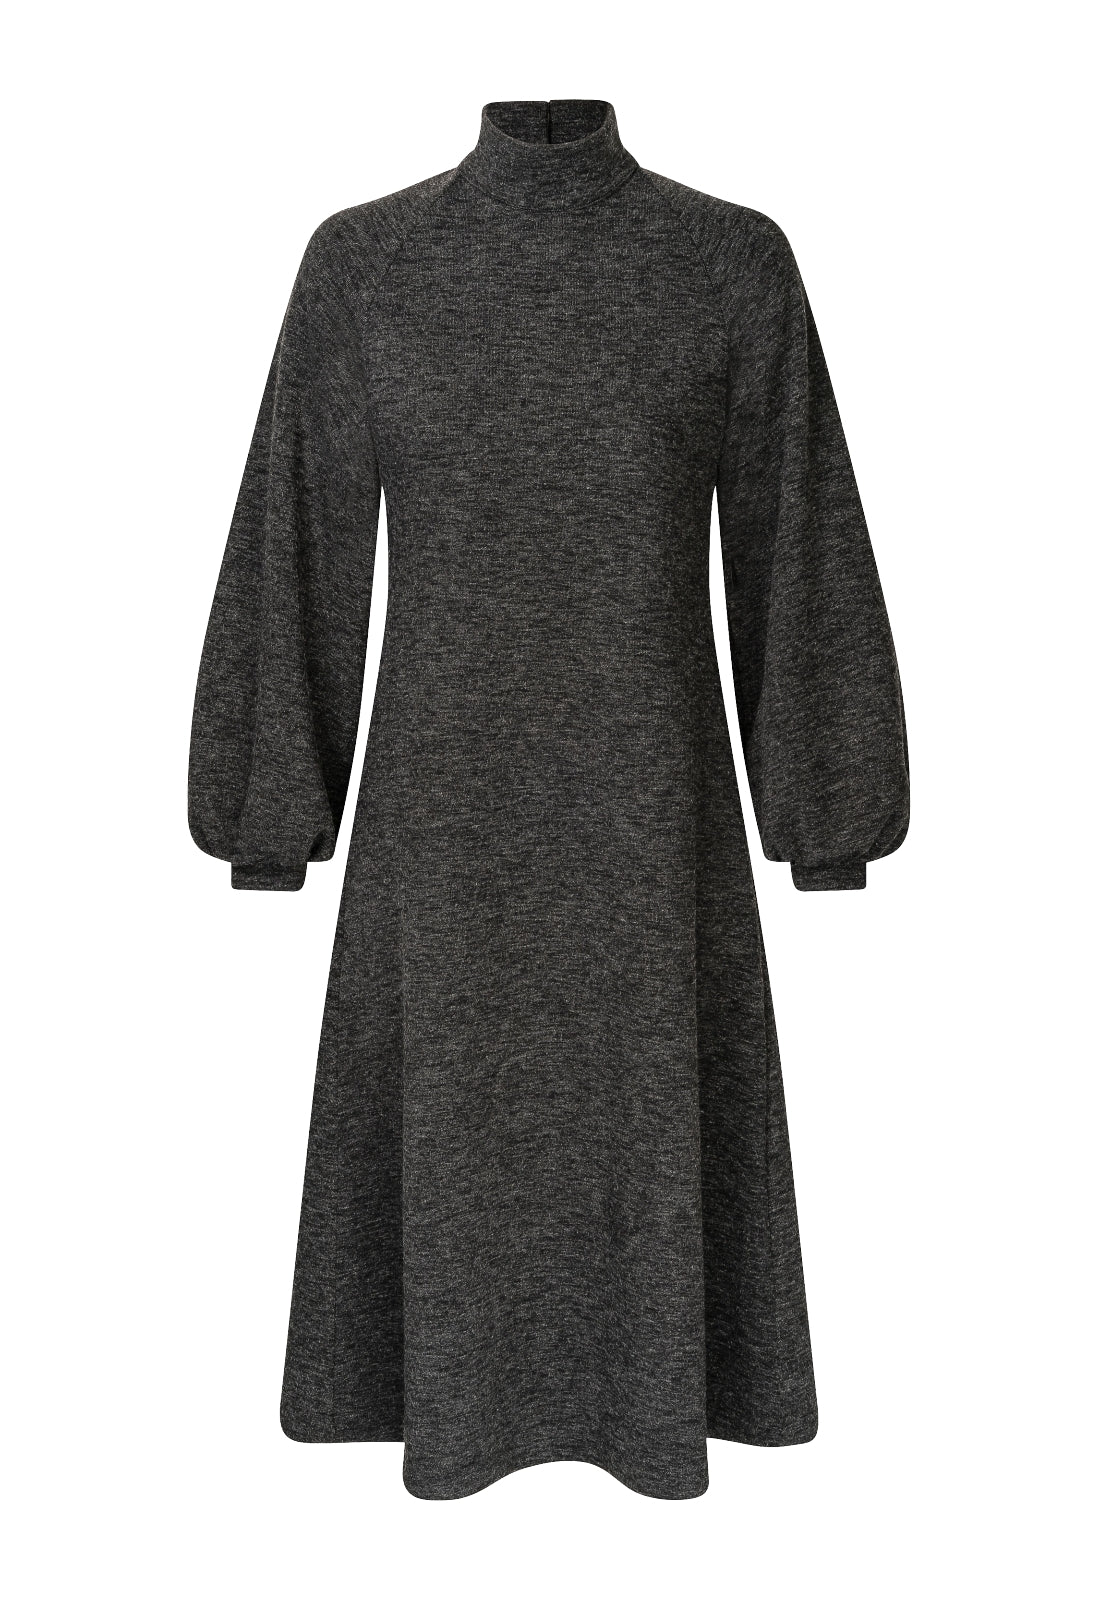 La Camicia Kleid in dunklem grau. A- Form Kleid in edler Viskose Wolle Qualität mit angenehmen Tragekomfort von La Camicia online kaufen. Schlupfkleid mit kleinem Rückendekolleté und Stehkragen aus der neuen La Camicia Kollektion.